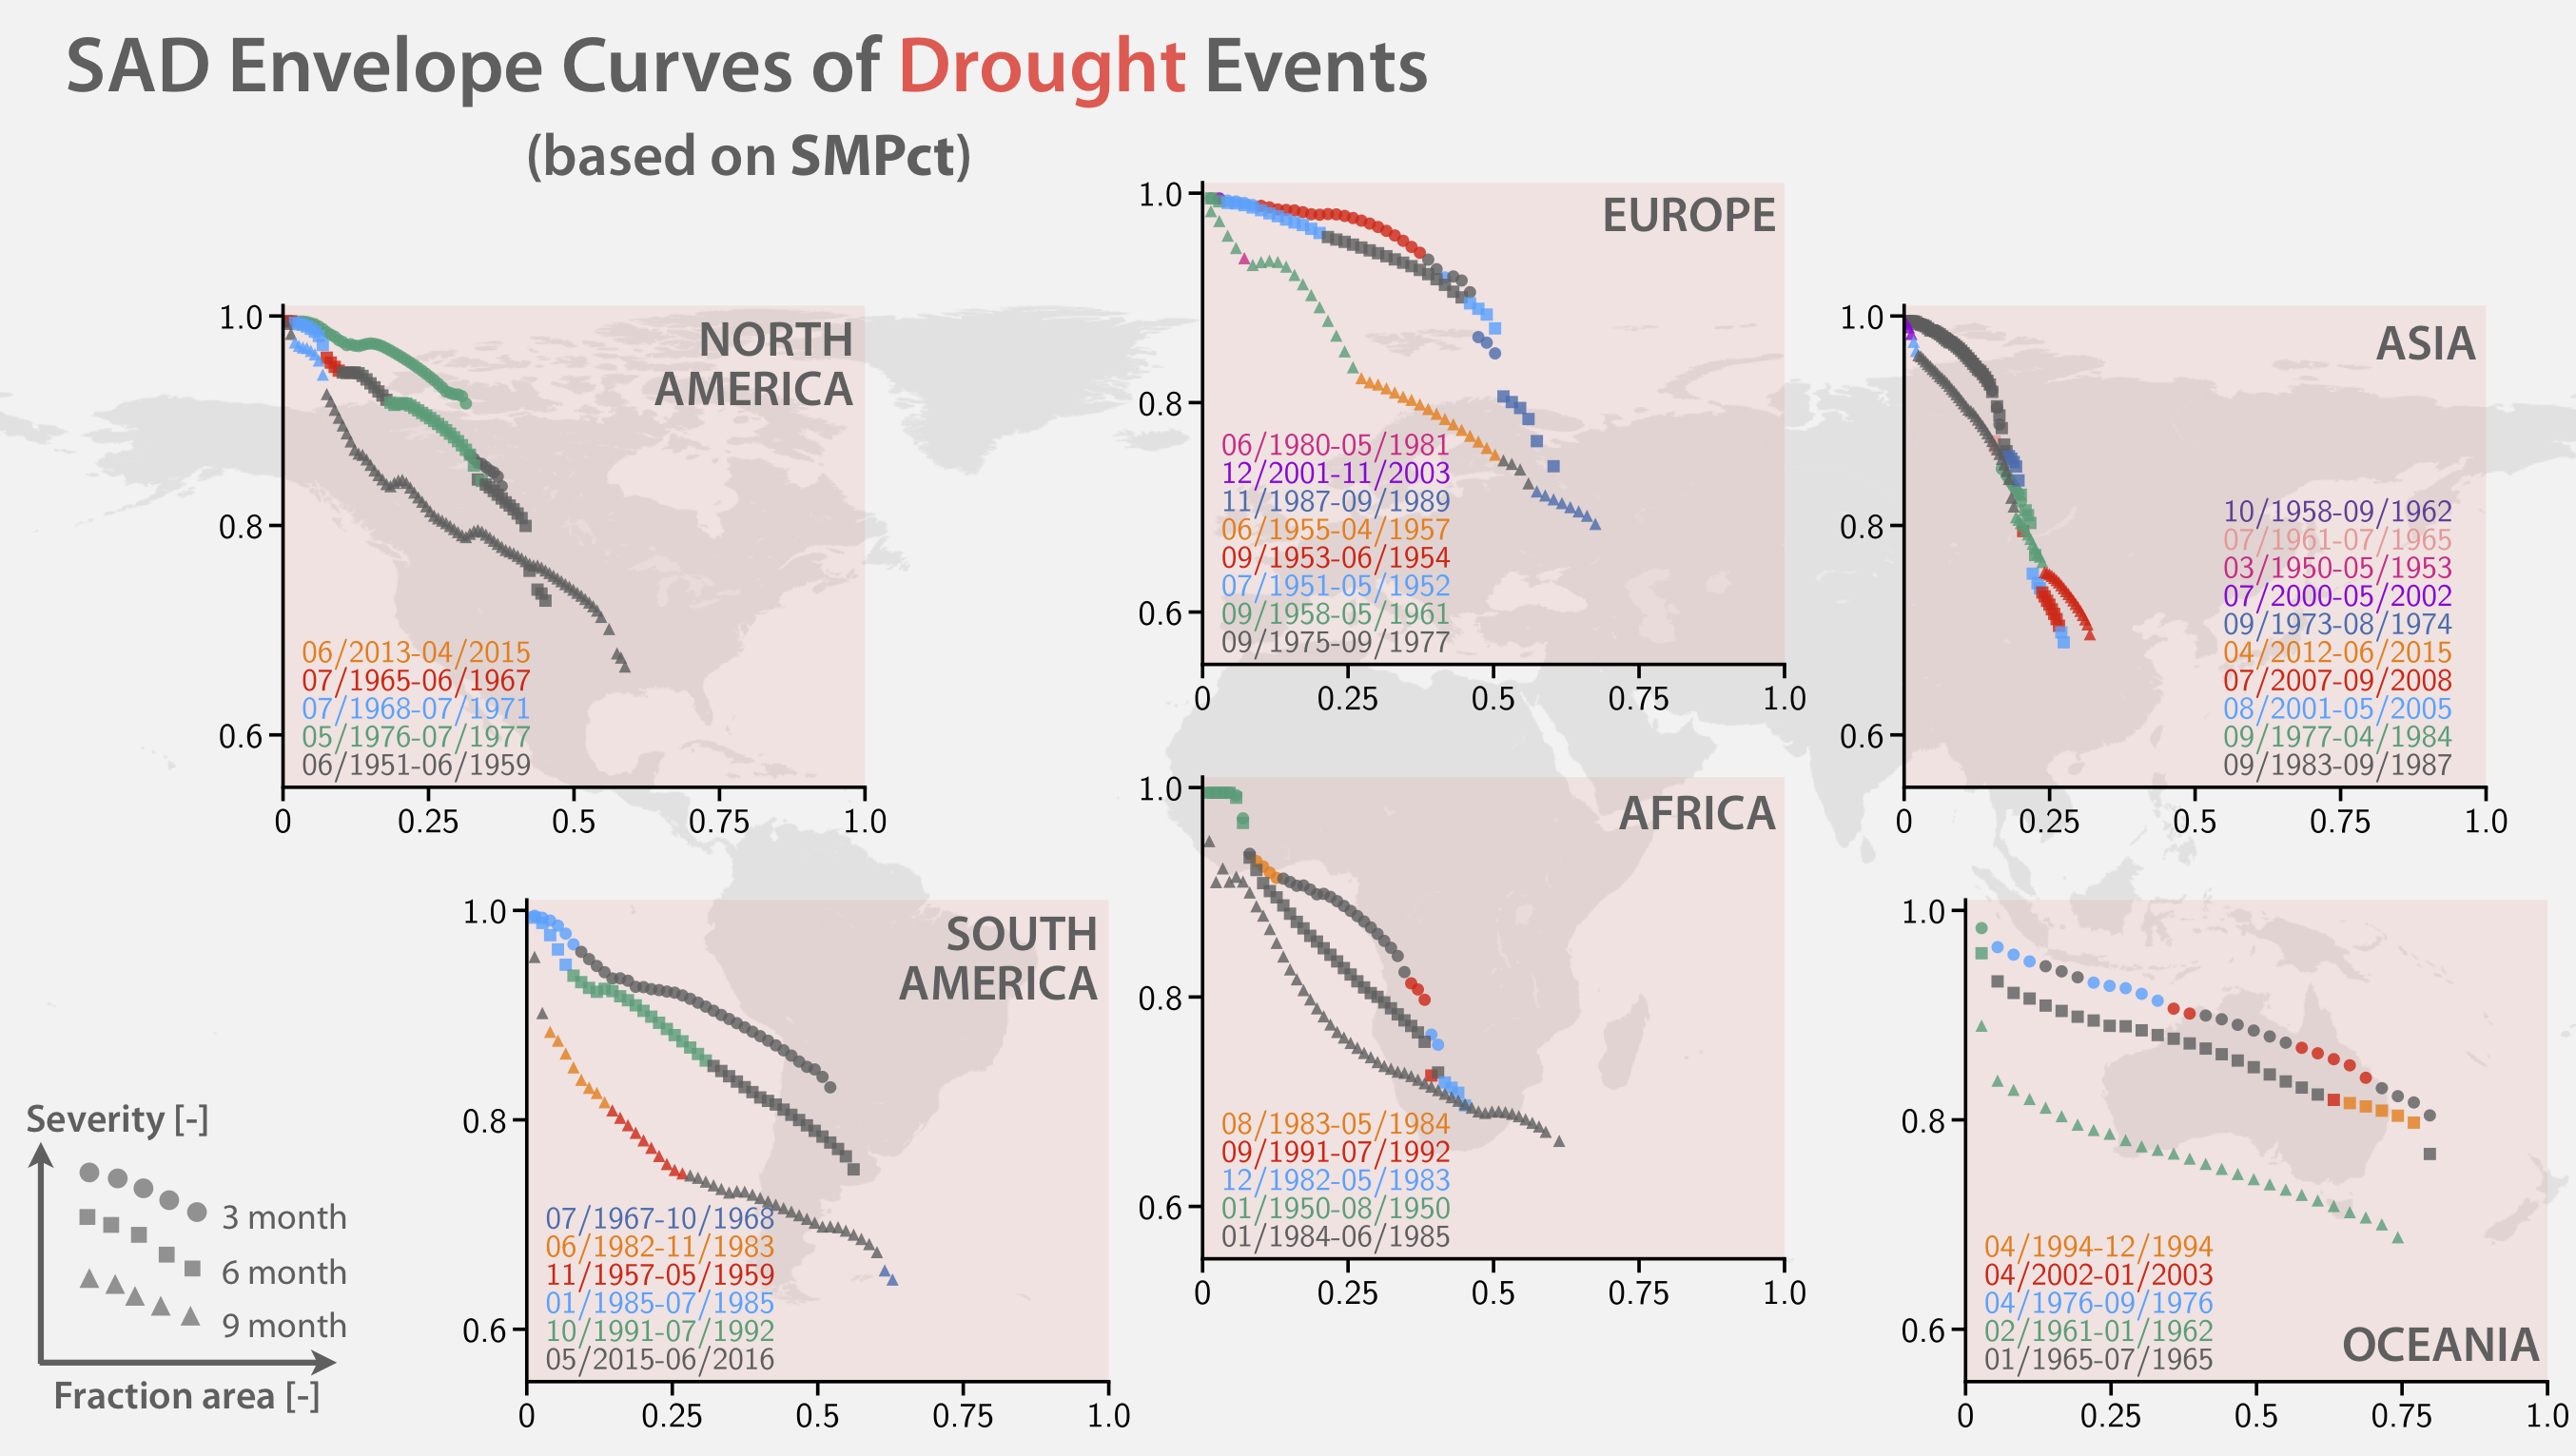 _images/SAD_curve_envelope_SMPct_drought.png